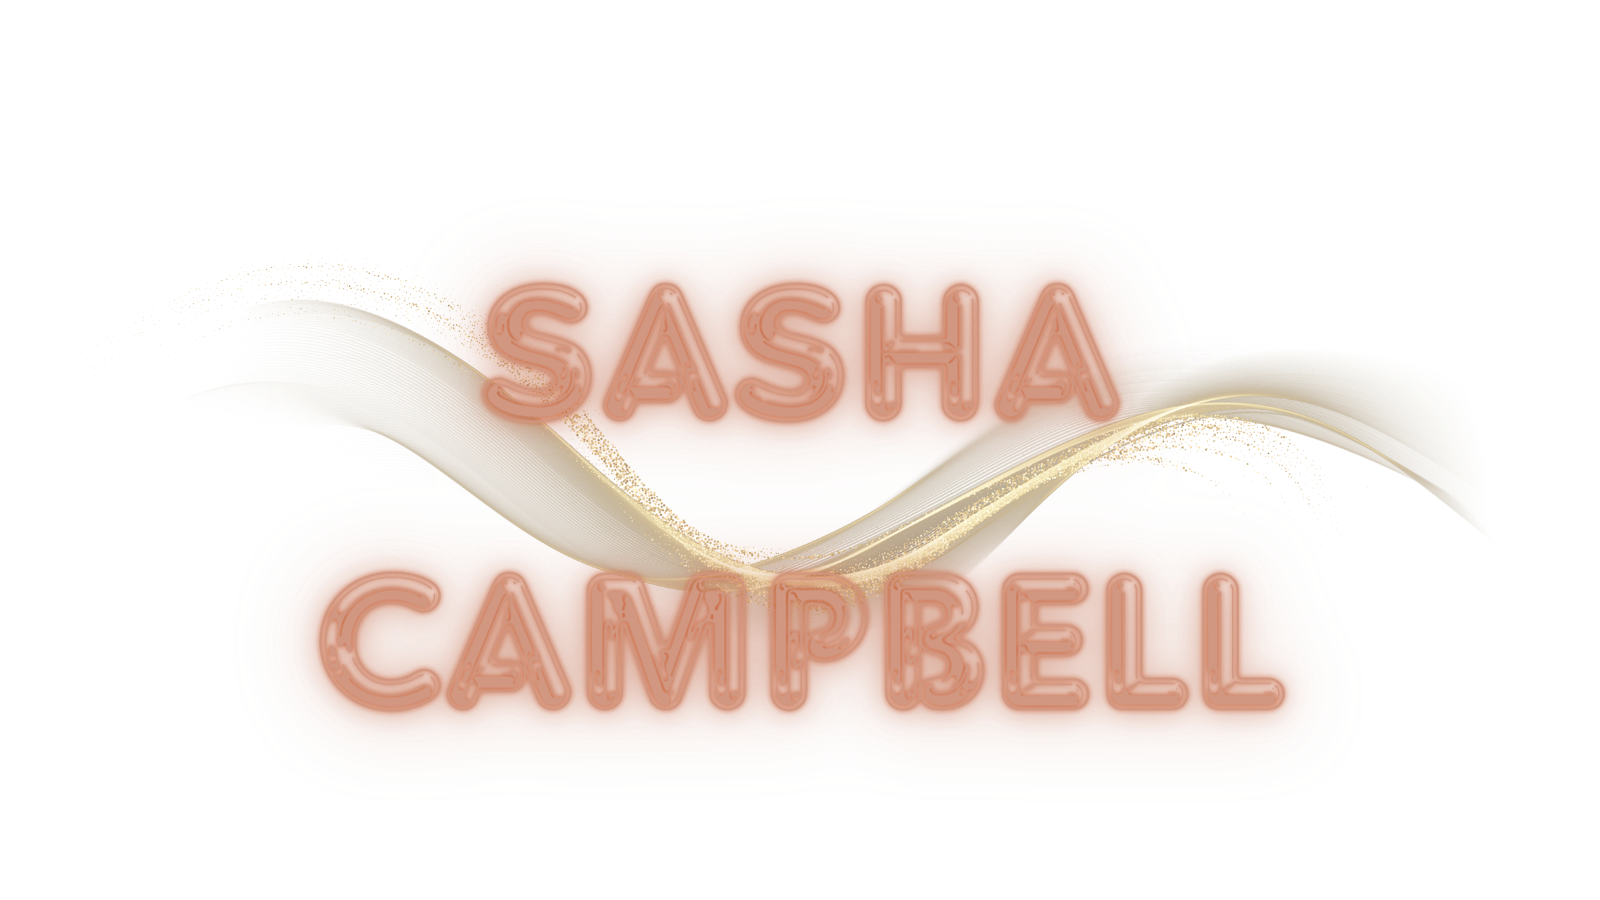 SashaCampbell ♥♥♥ image: 1